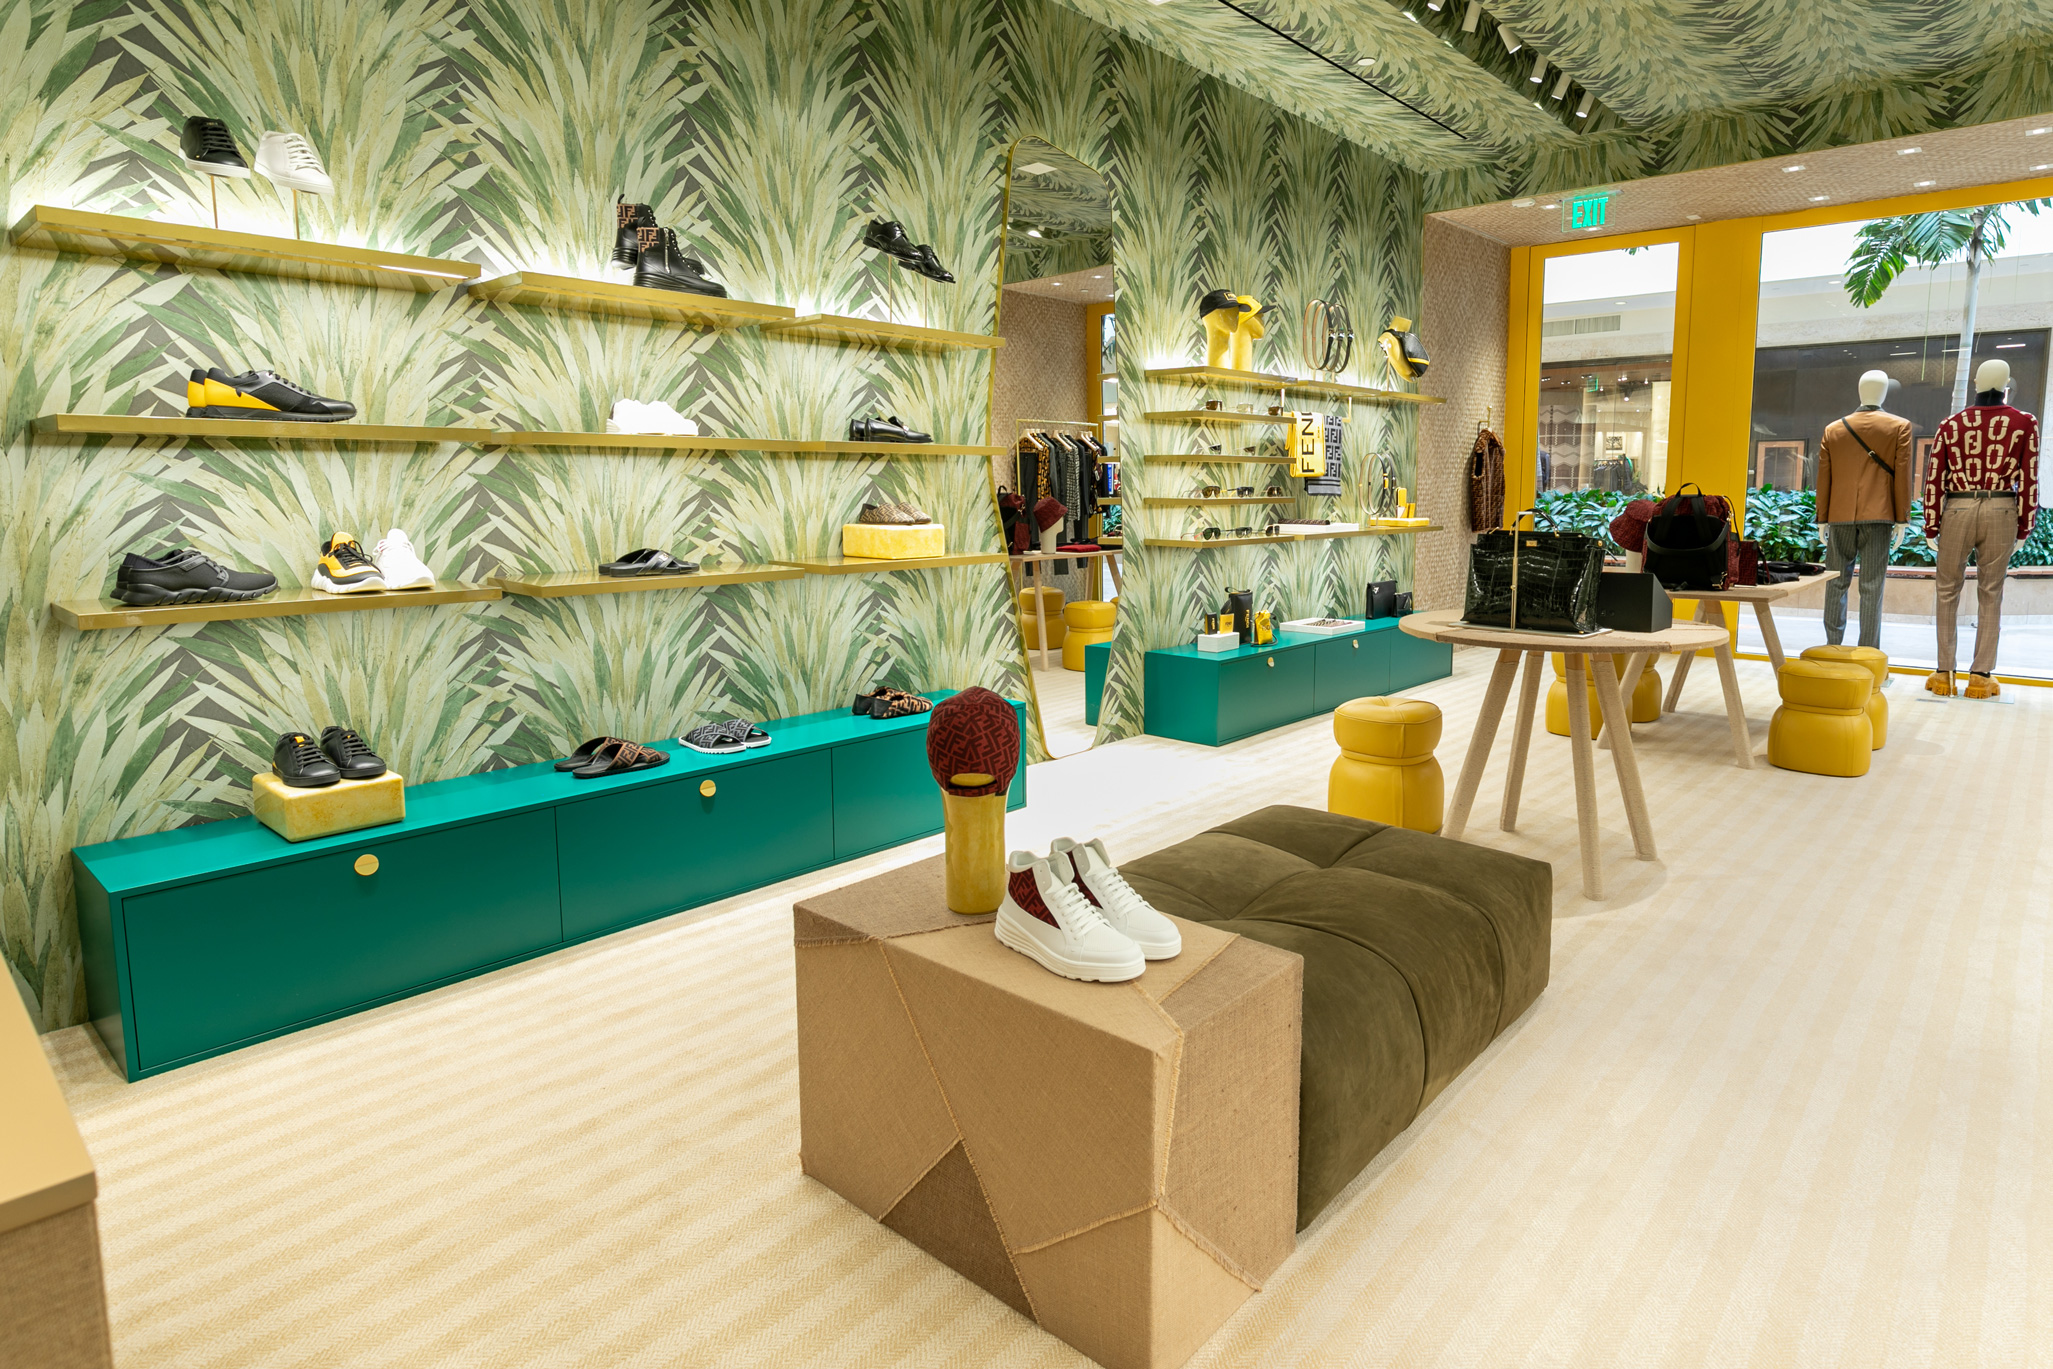 Fendi Opens Menswear Boutique in South Coast Plaza | The ...